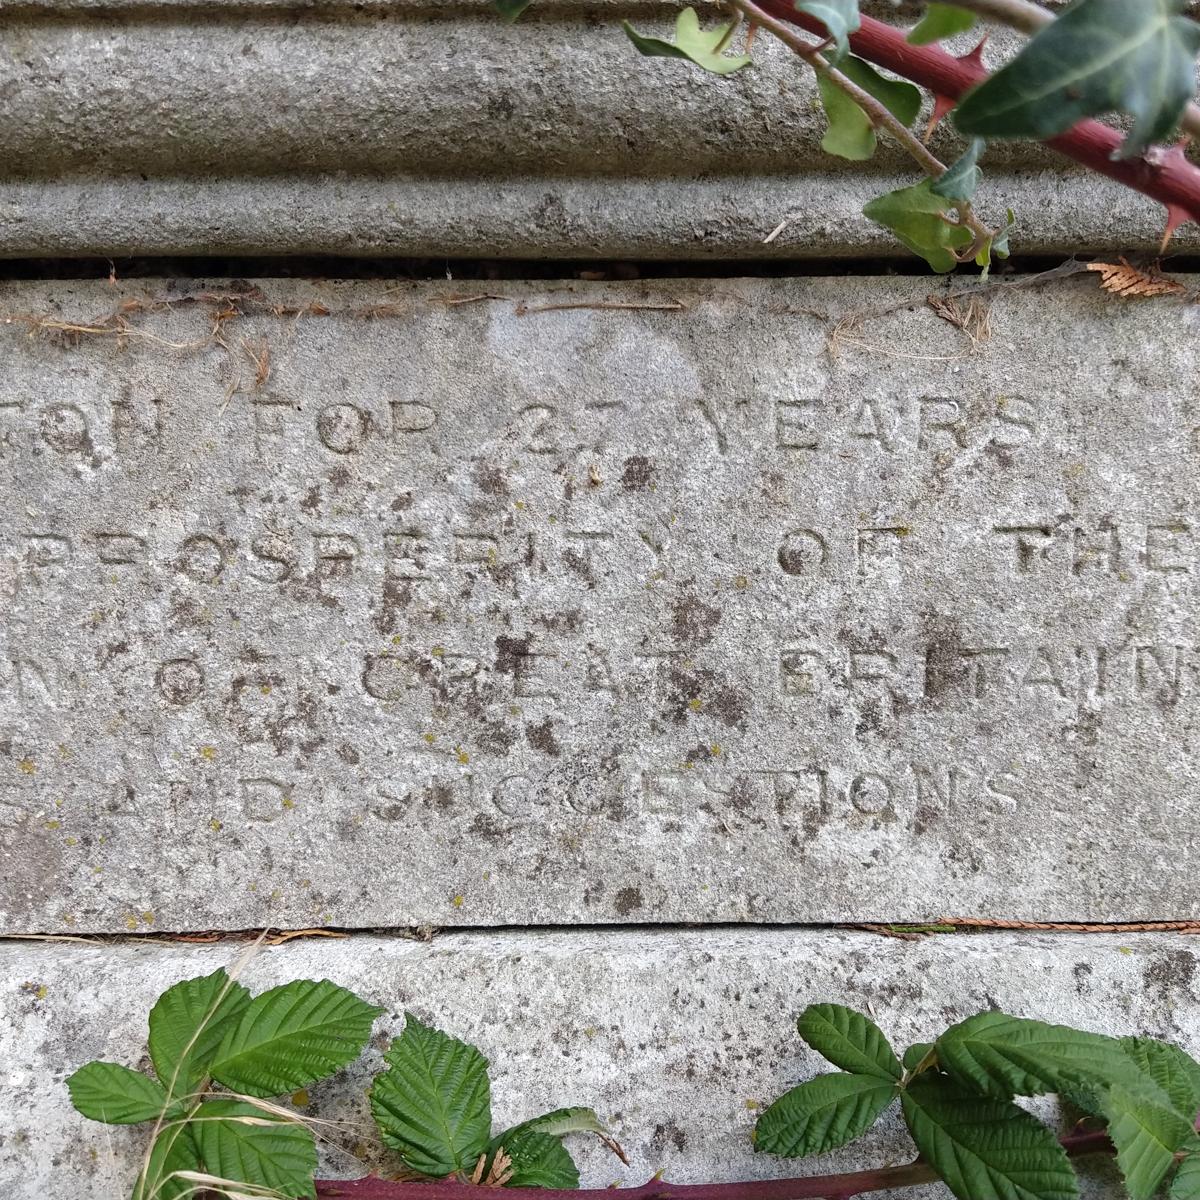 Grave of Robert Lankester & n.n. Lankester